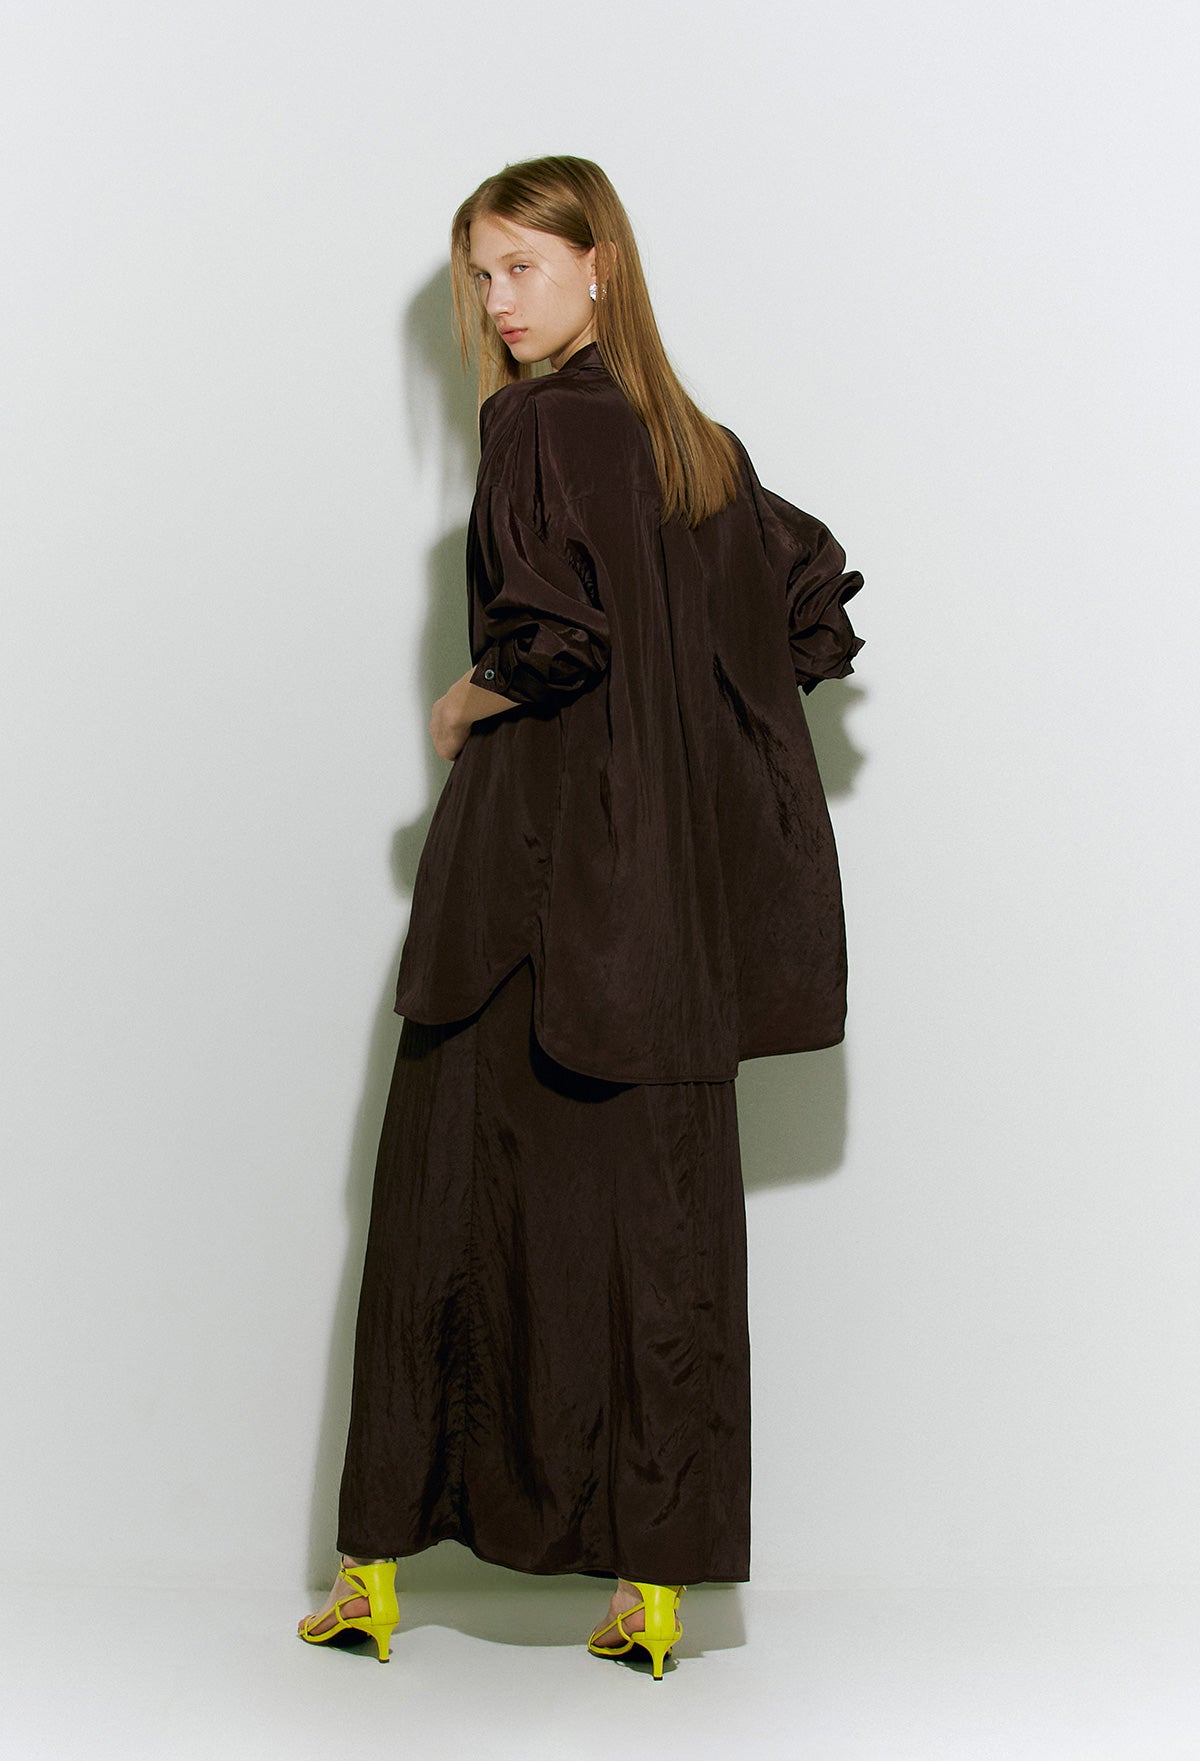 Flowing Cami Dress In Dark Brown